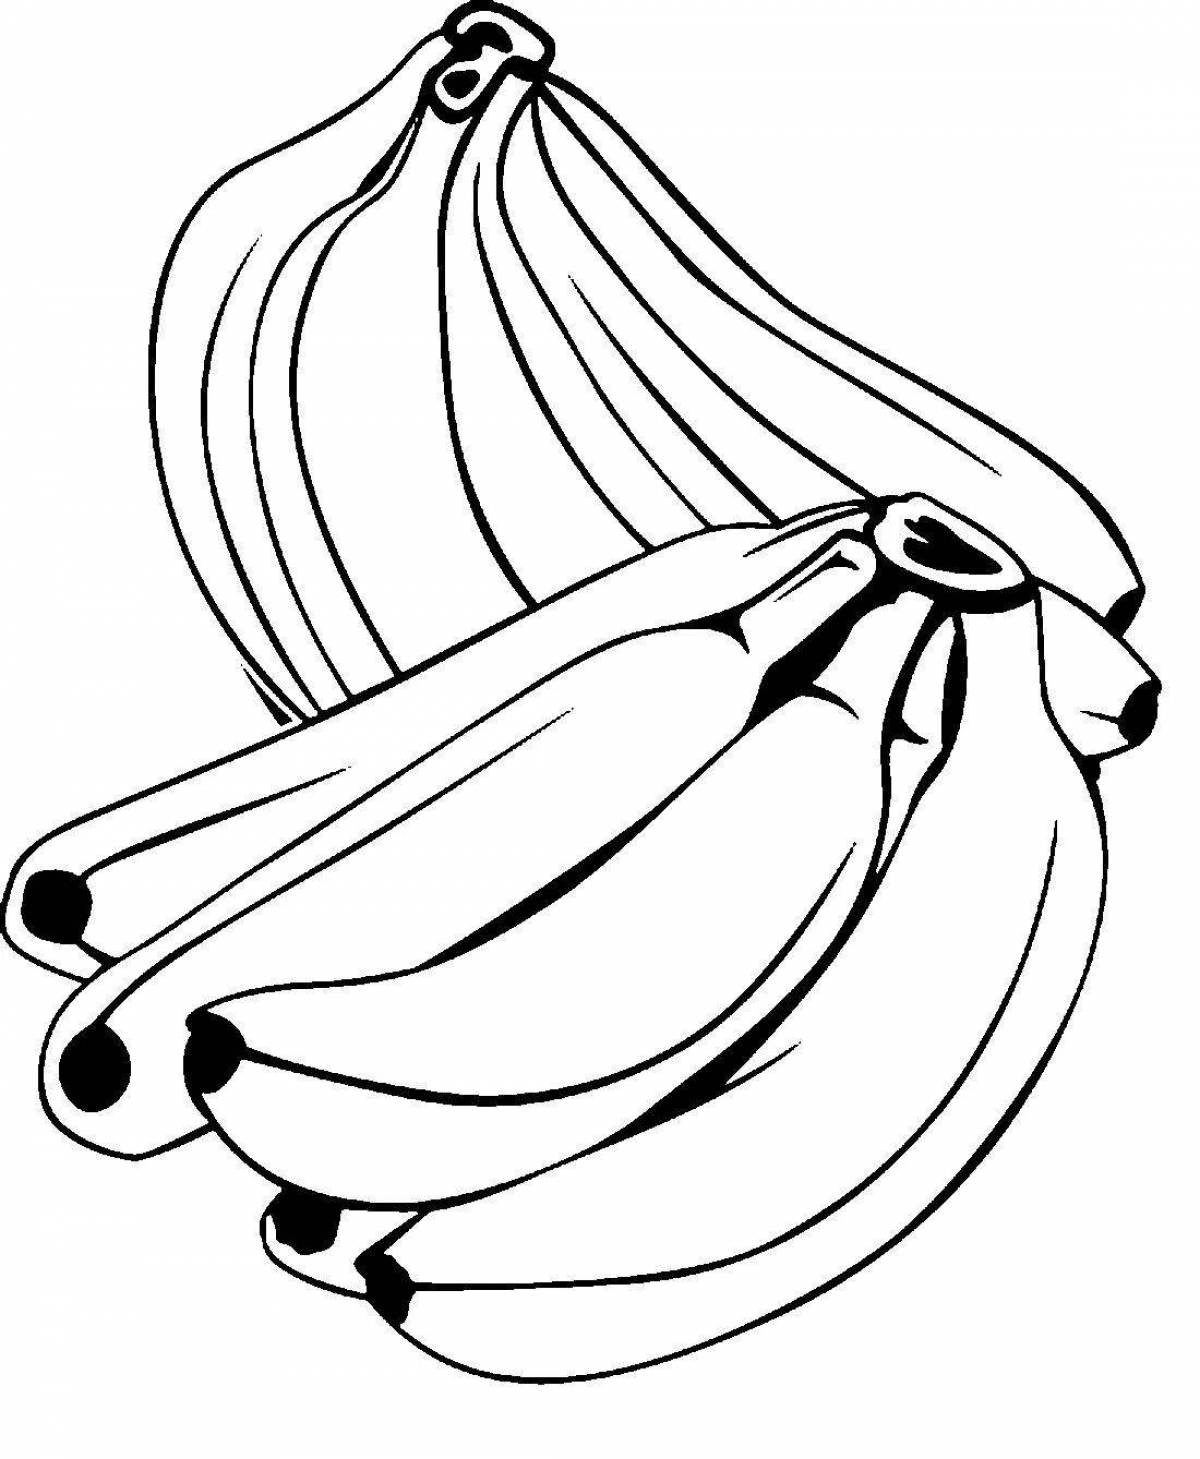 Банановая раскраска